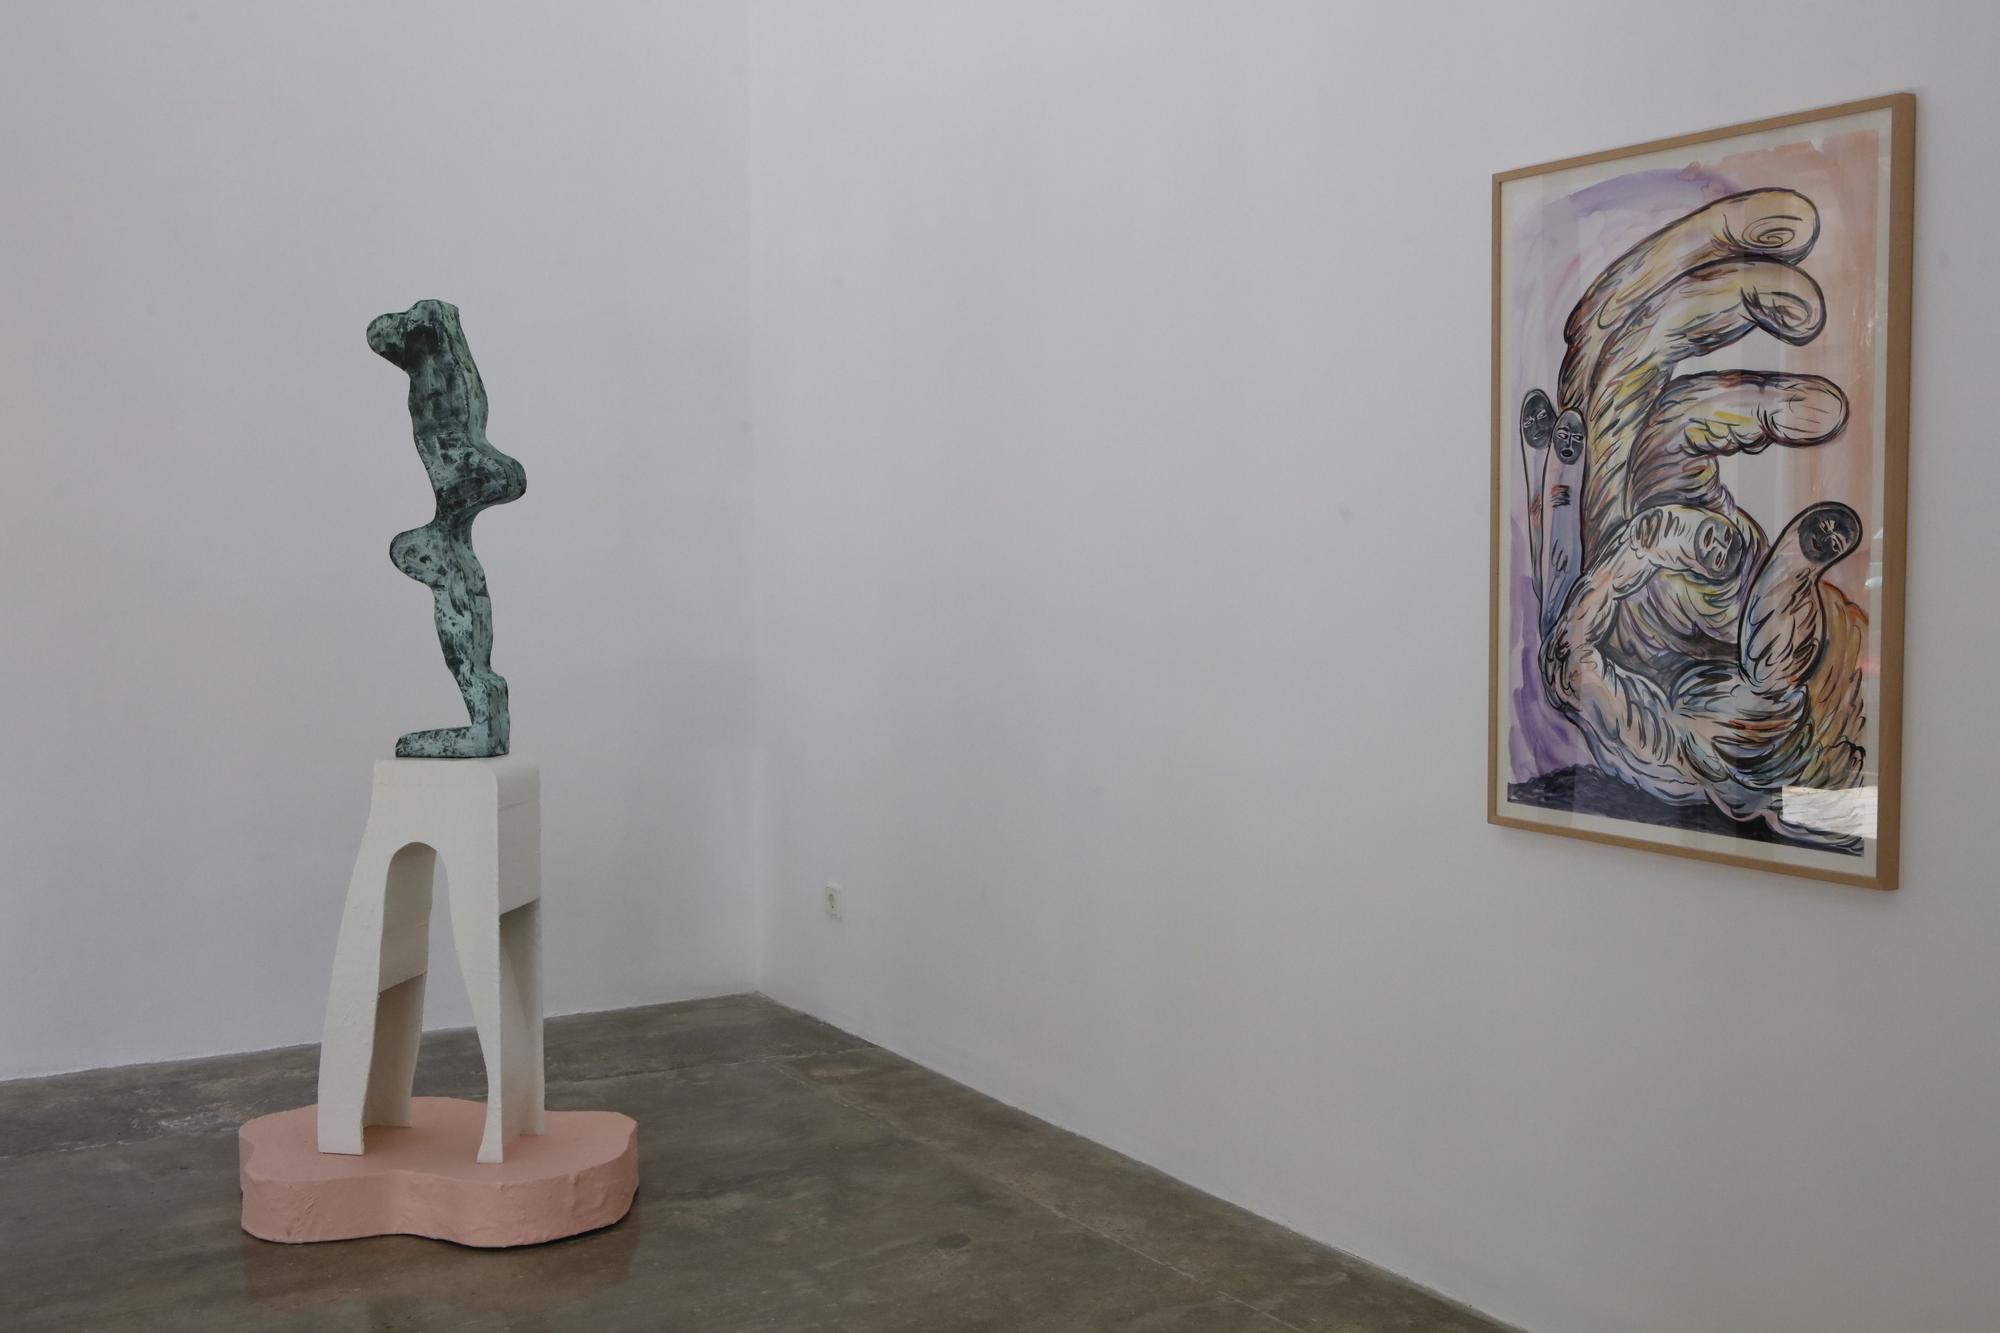 Zeitgenössische Kunst in lichtdurchfluteten Räumen: Die Galería Fermay in Palma de Mallorca